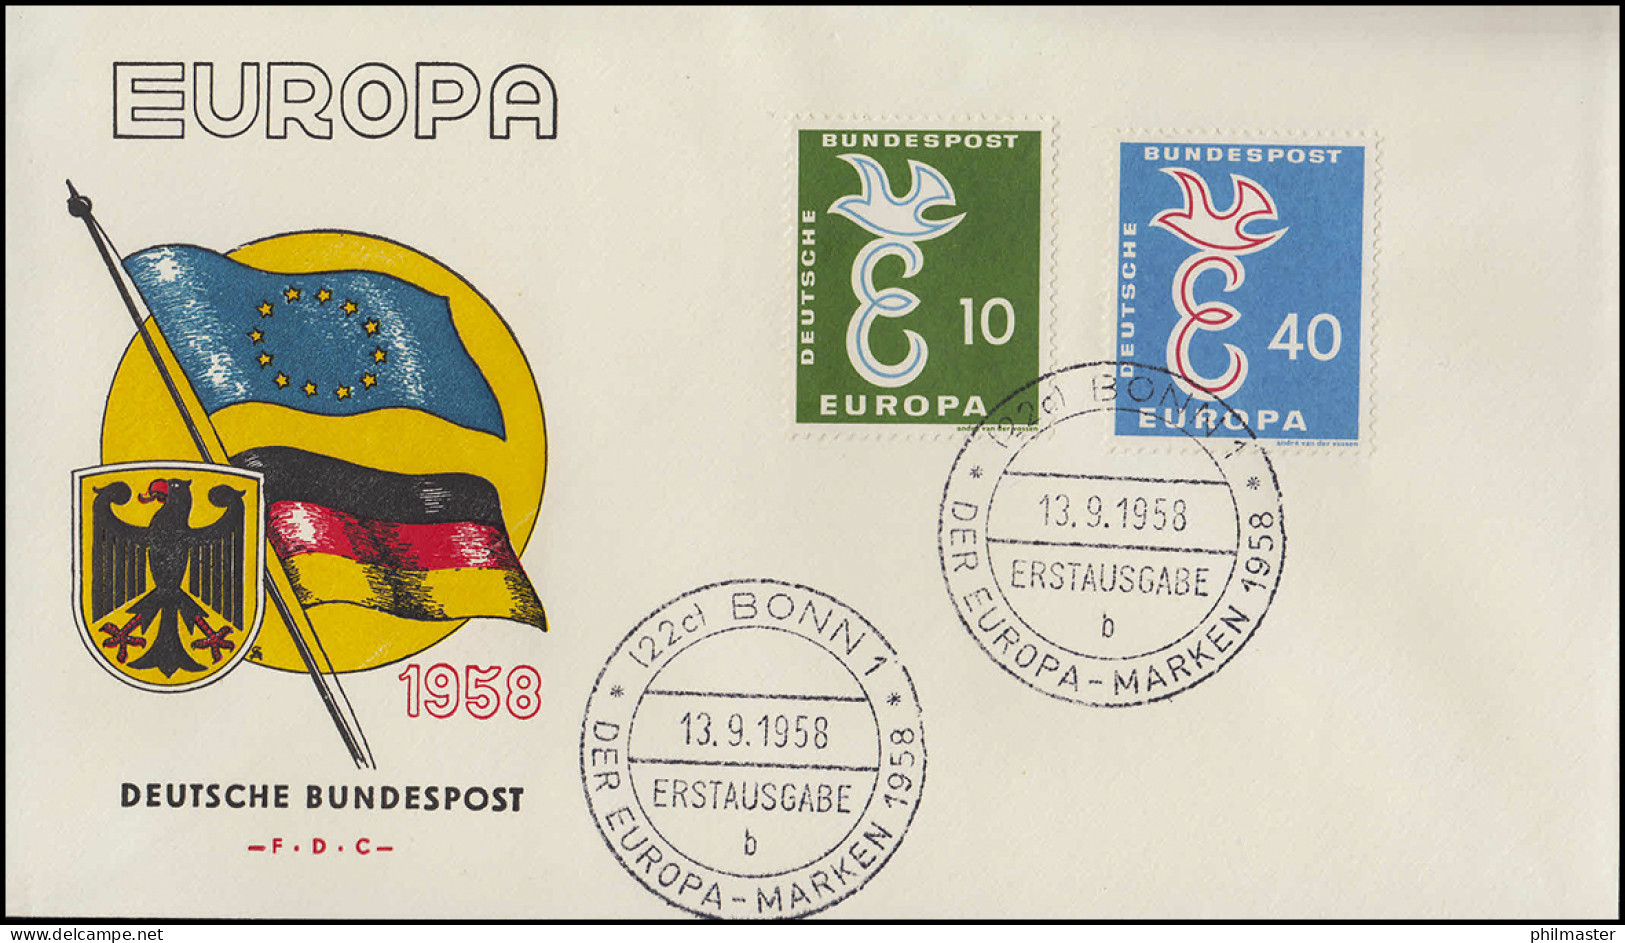 295-296 CEPT Europa-Marken 1958 Als Satz Auf Schmuck-FDC ESSt Bonn B 13.9.1958 - Covers & Documents